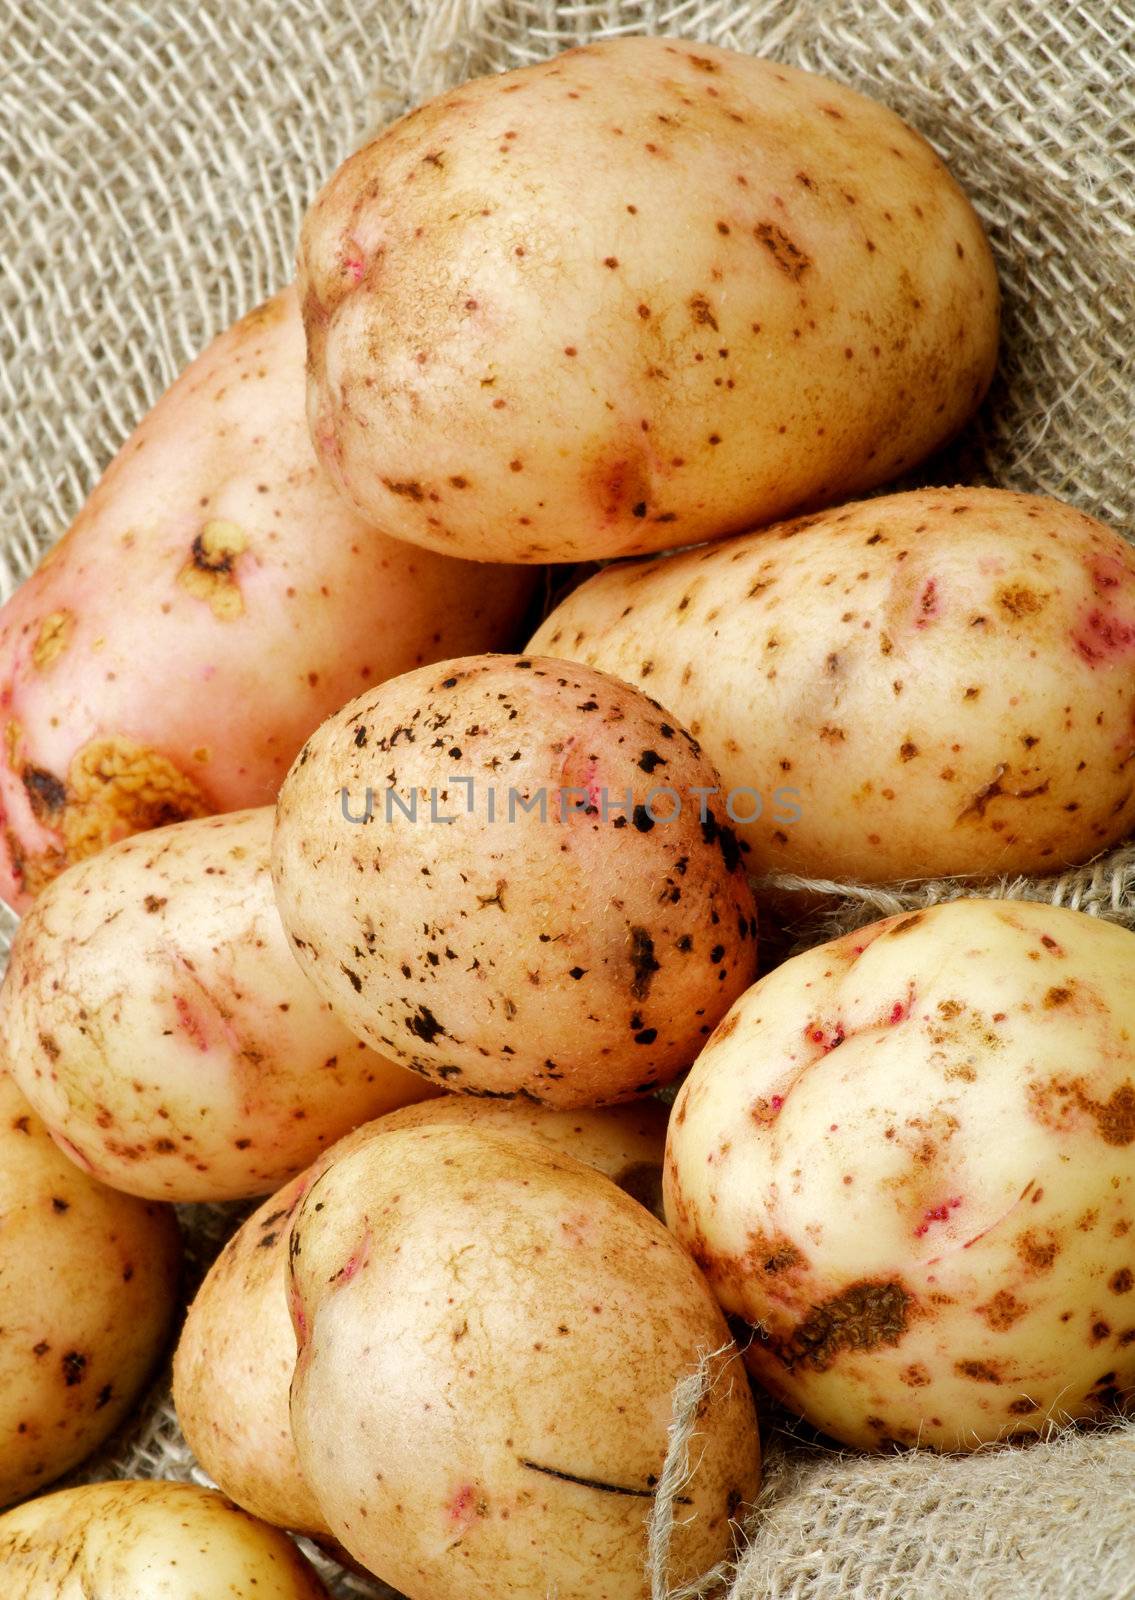 Raw Potato by zhekos